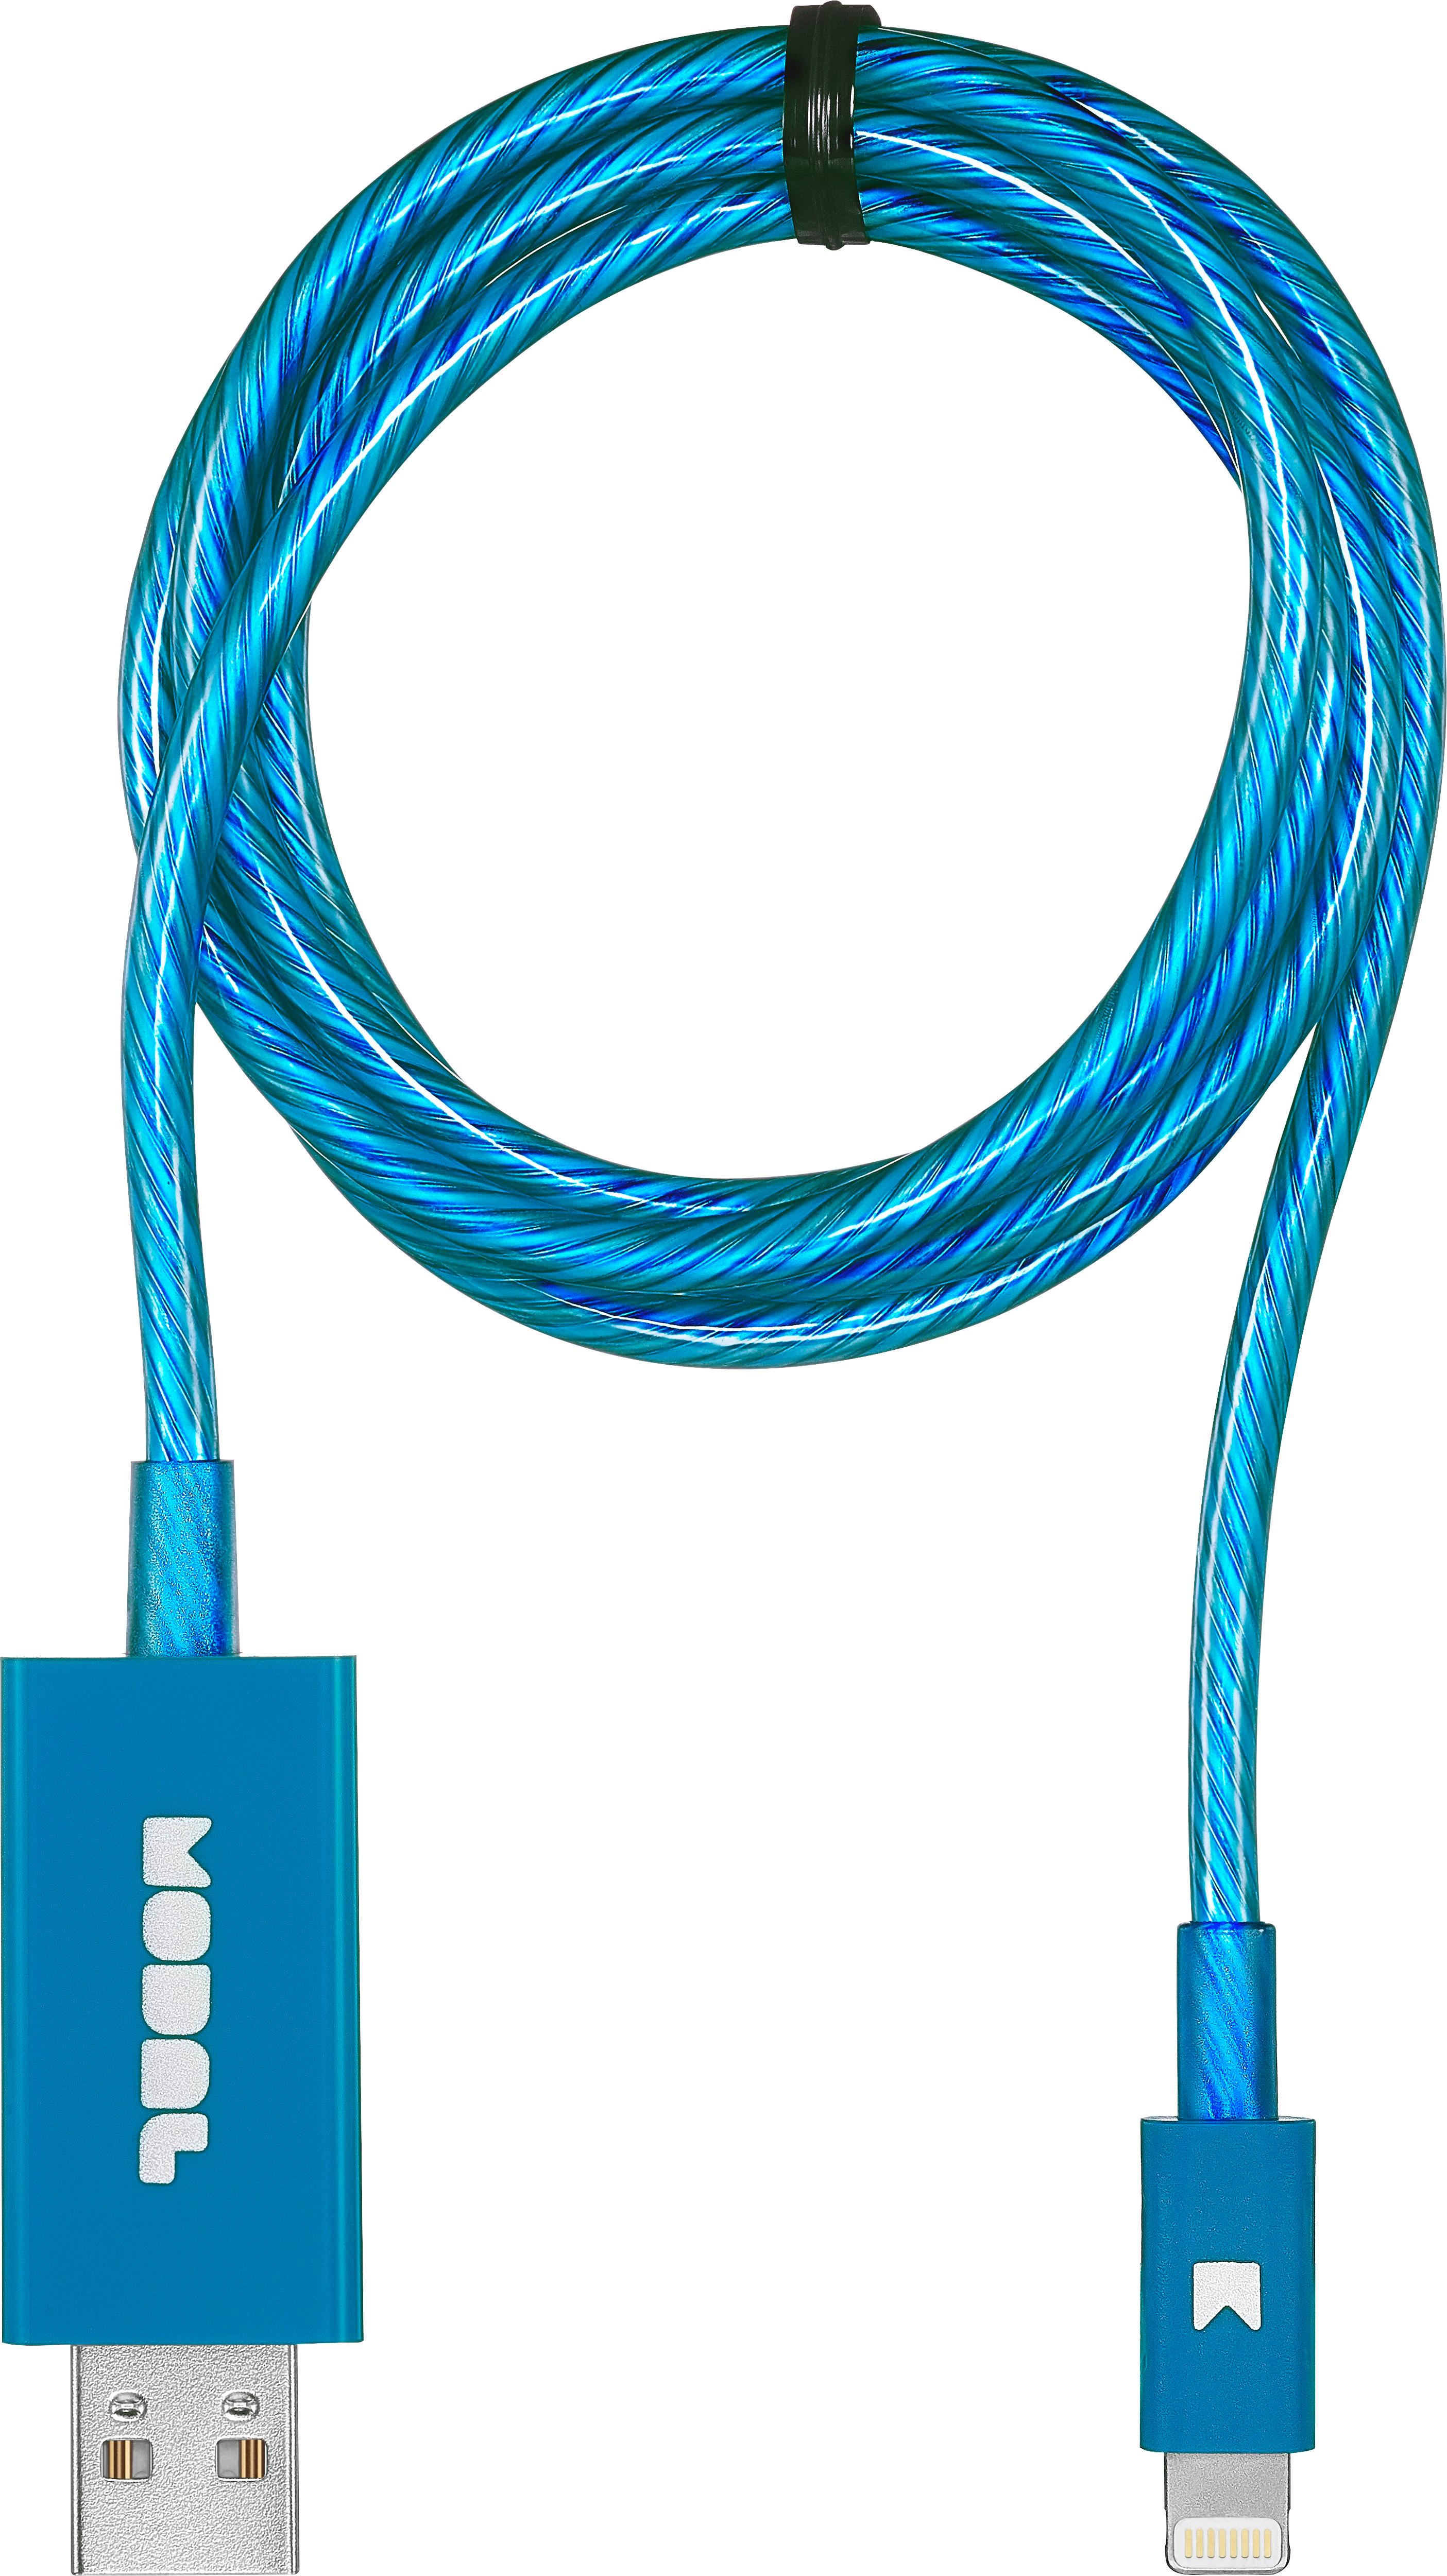 Compre Carga Rápida Usb Tipo C Cable Cargador Cable 1m 2m 3m Para Iphone y Cable  Usb de China por 1.5 USD